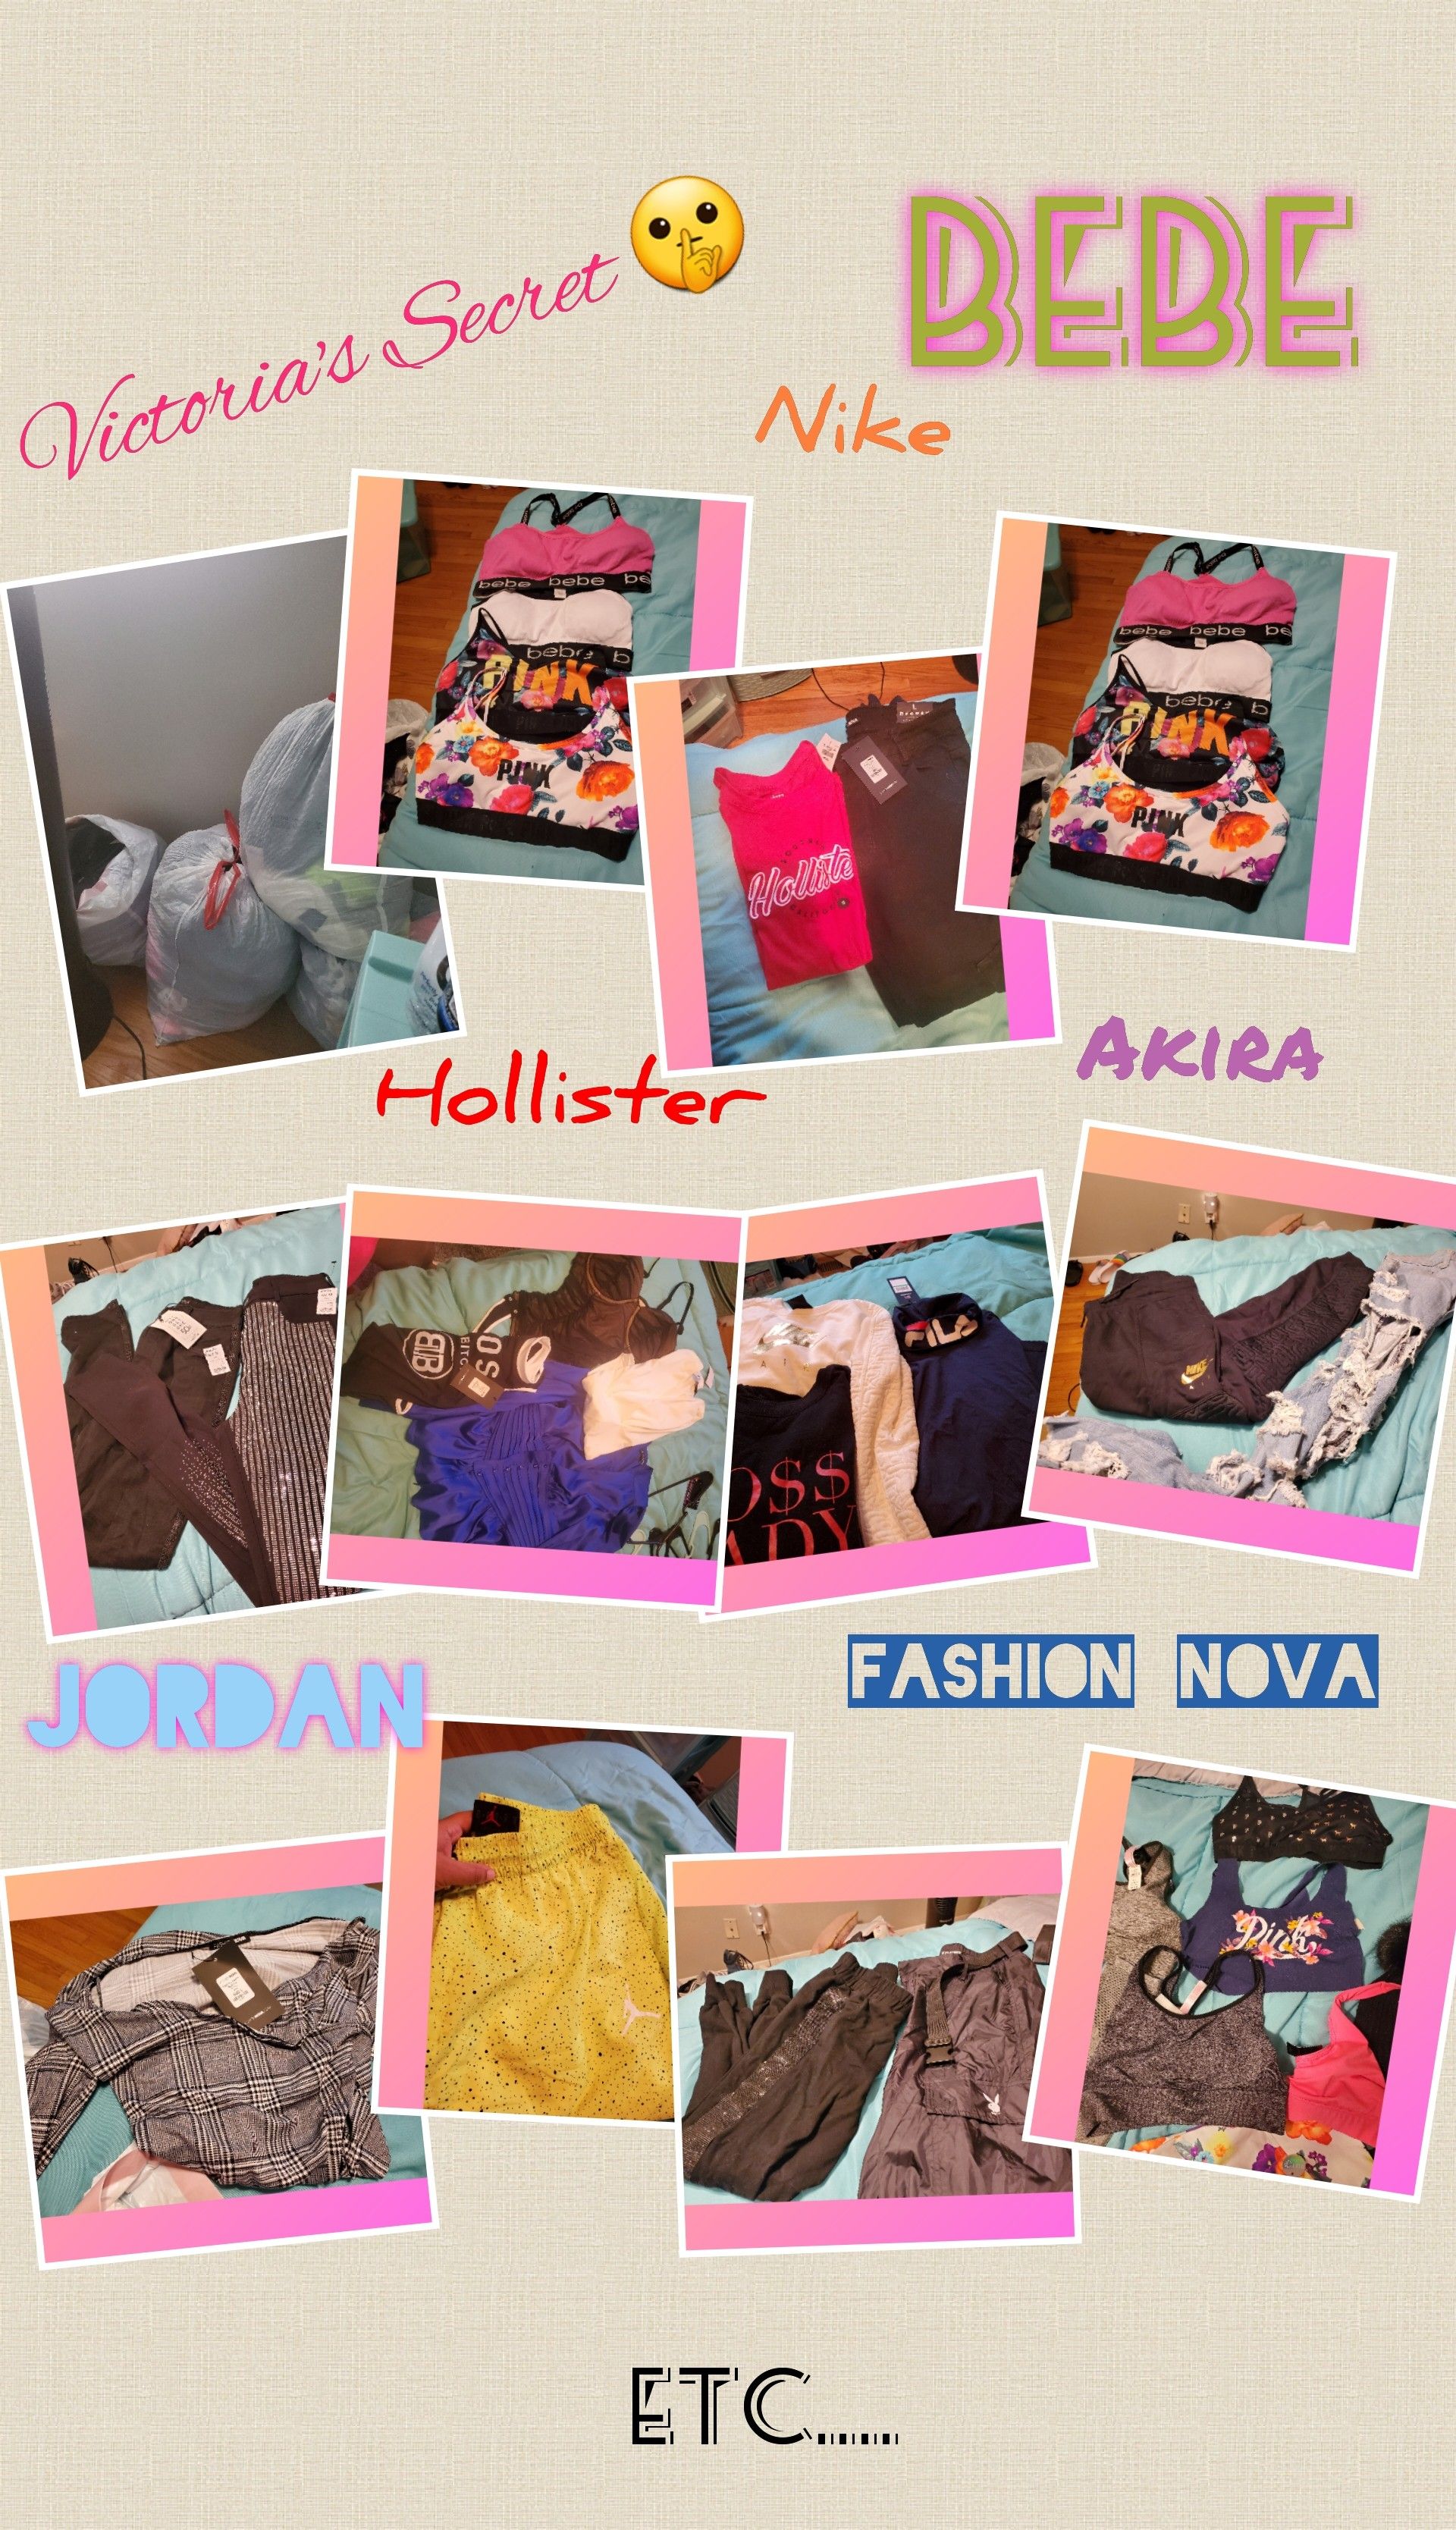 Nike/Jordan/ Fashion Nova/ Akira/ Hollister/ Victoria's Secret/ bebe